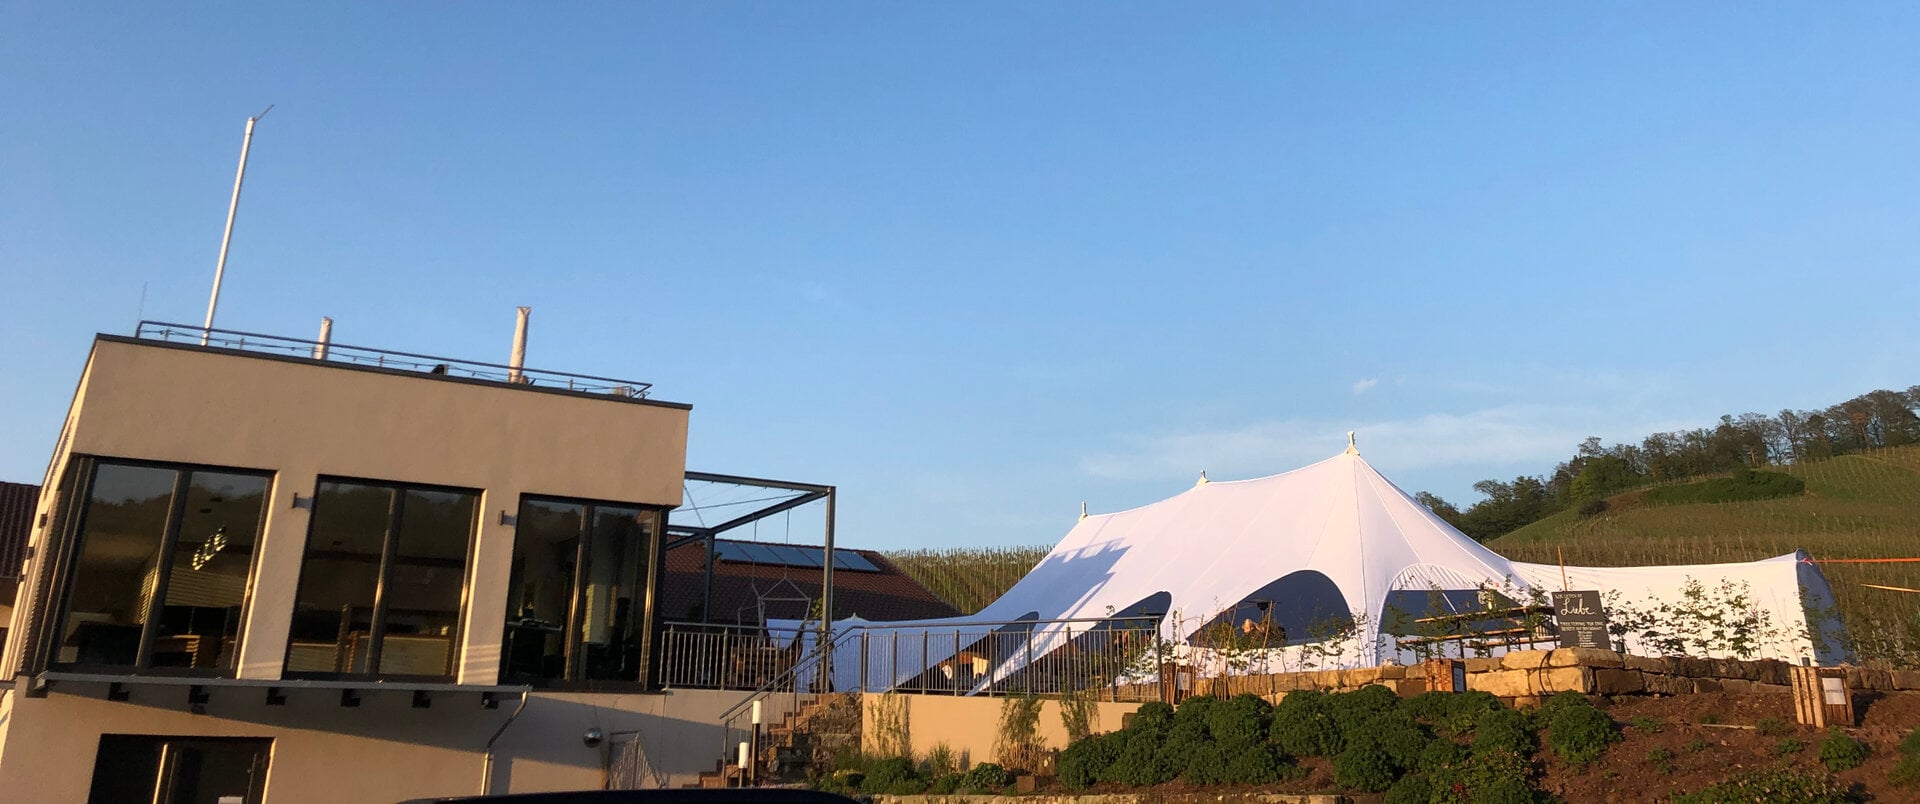 Modernes Gebäude mit Dachterrasse und einem großen weißen Zelt, das bei Sonnenuntergang auf einer angrenzenden Wiese mit Blick auf die weitläufigen Weinberge des Weinguts Bihlmayer aufgebaut wird.